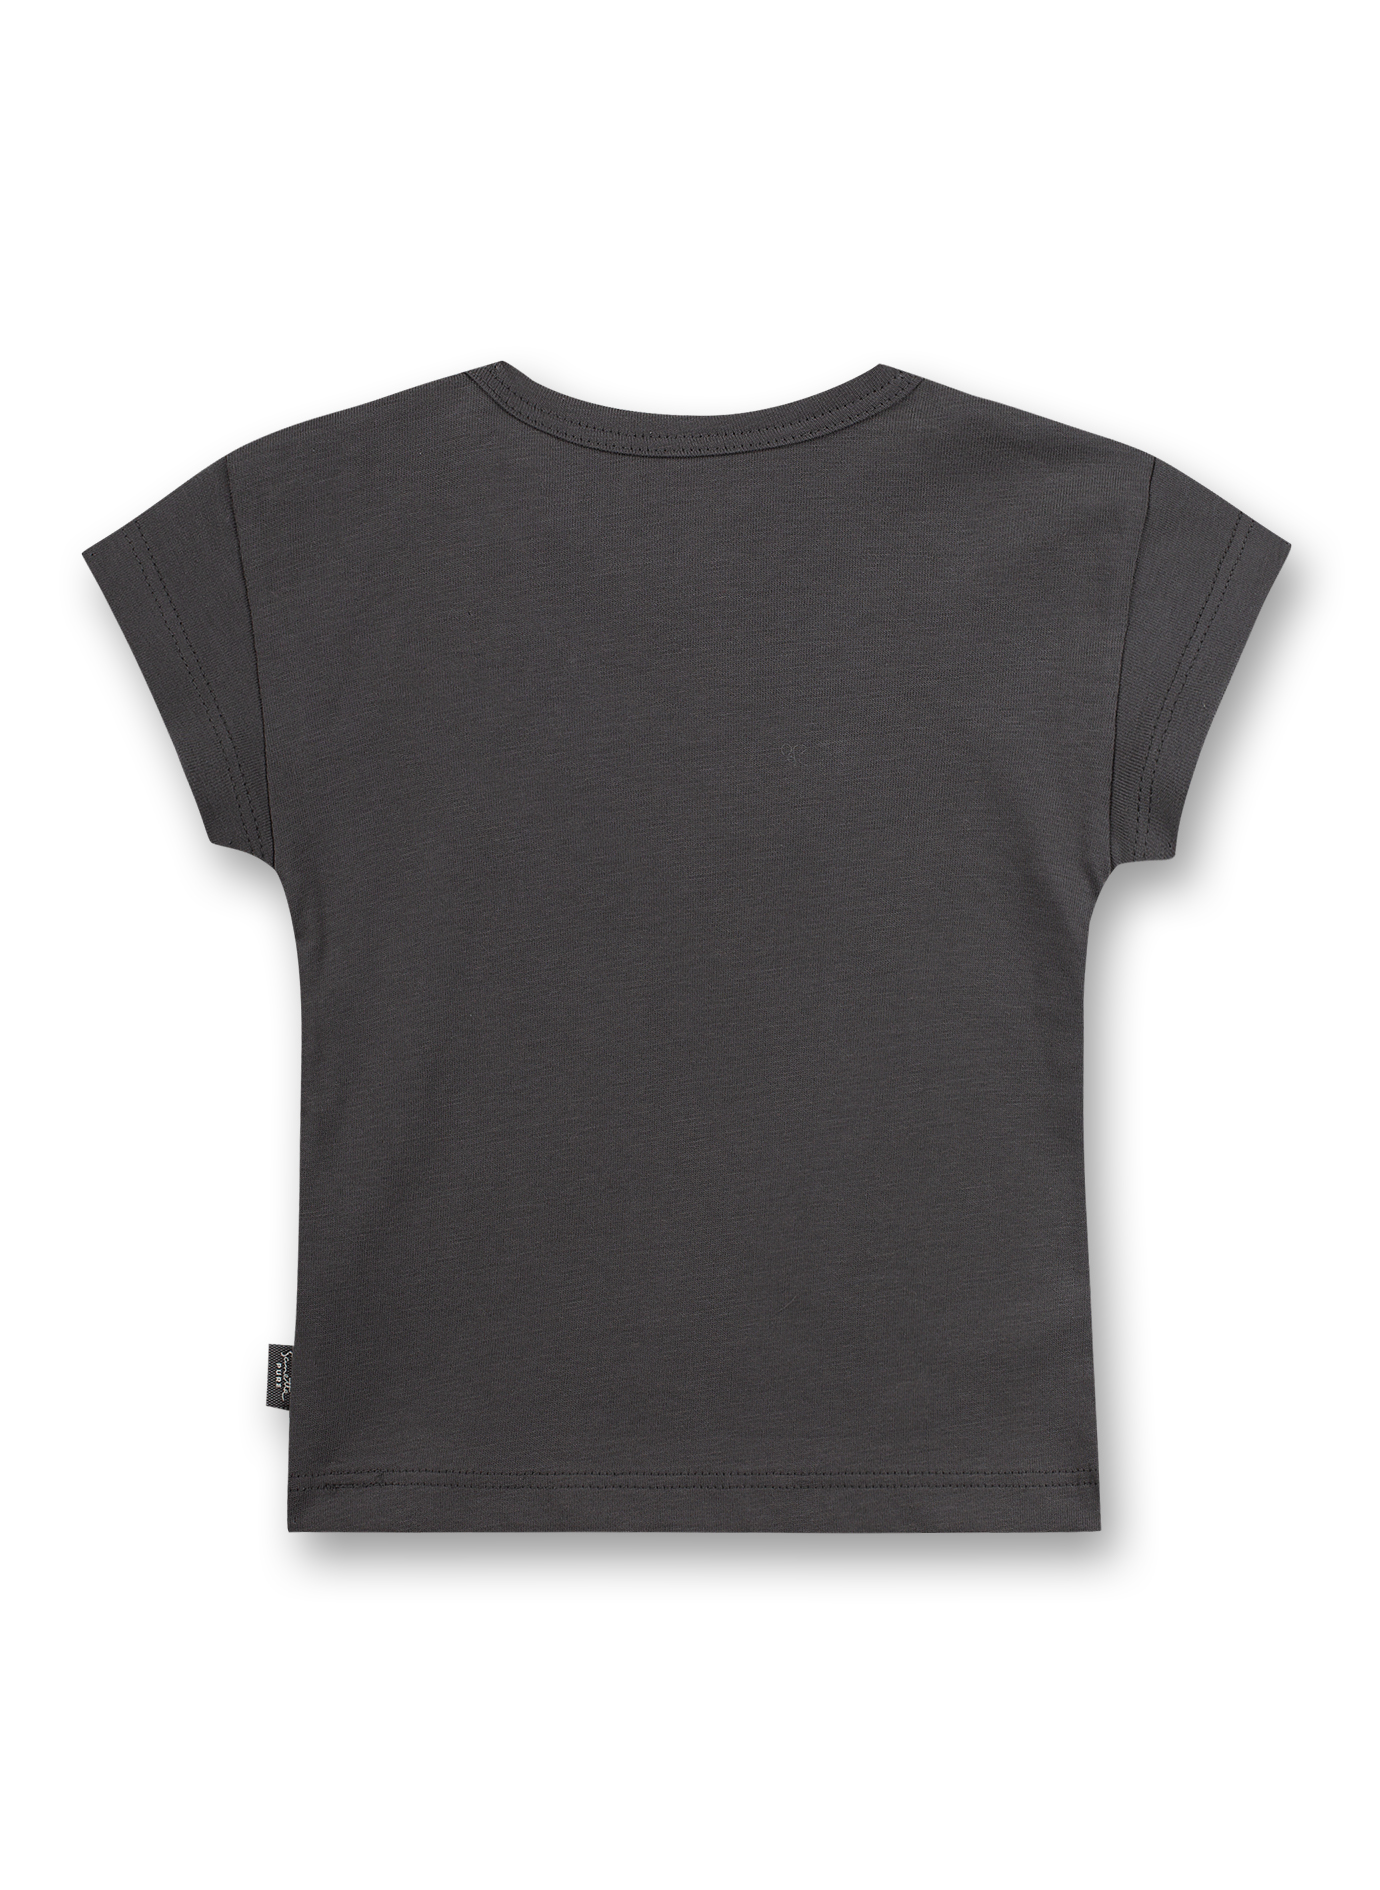 Mädchen T-Shirt Dunkelgrau